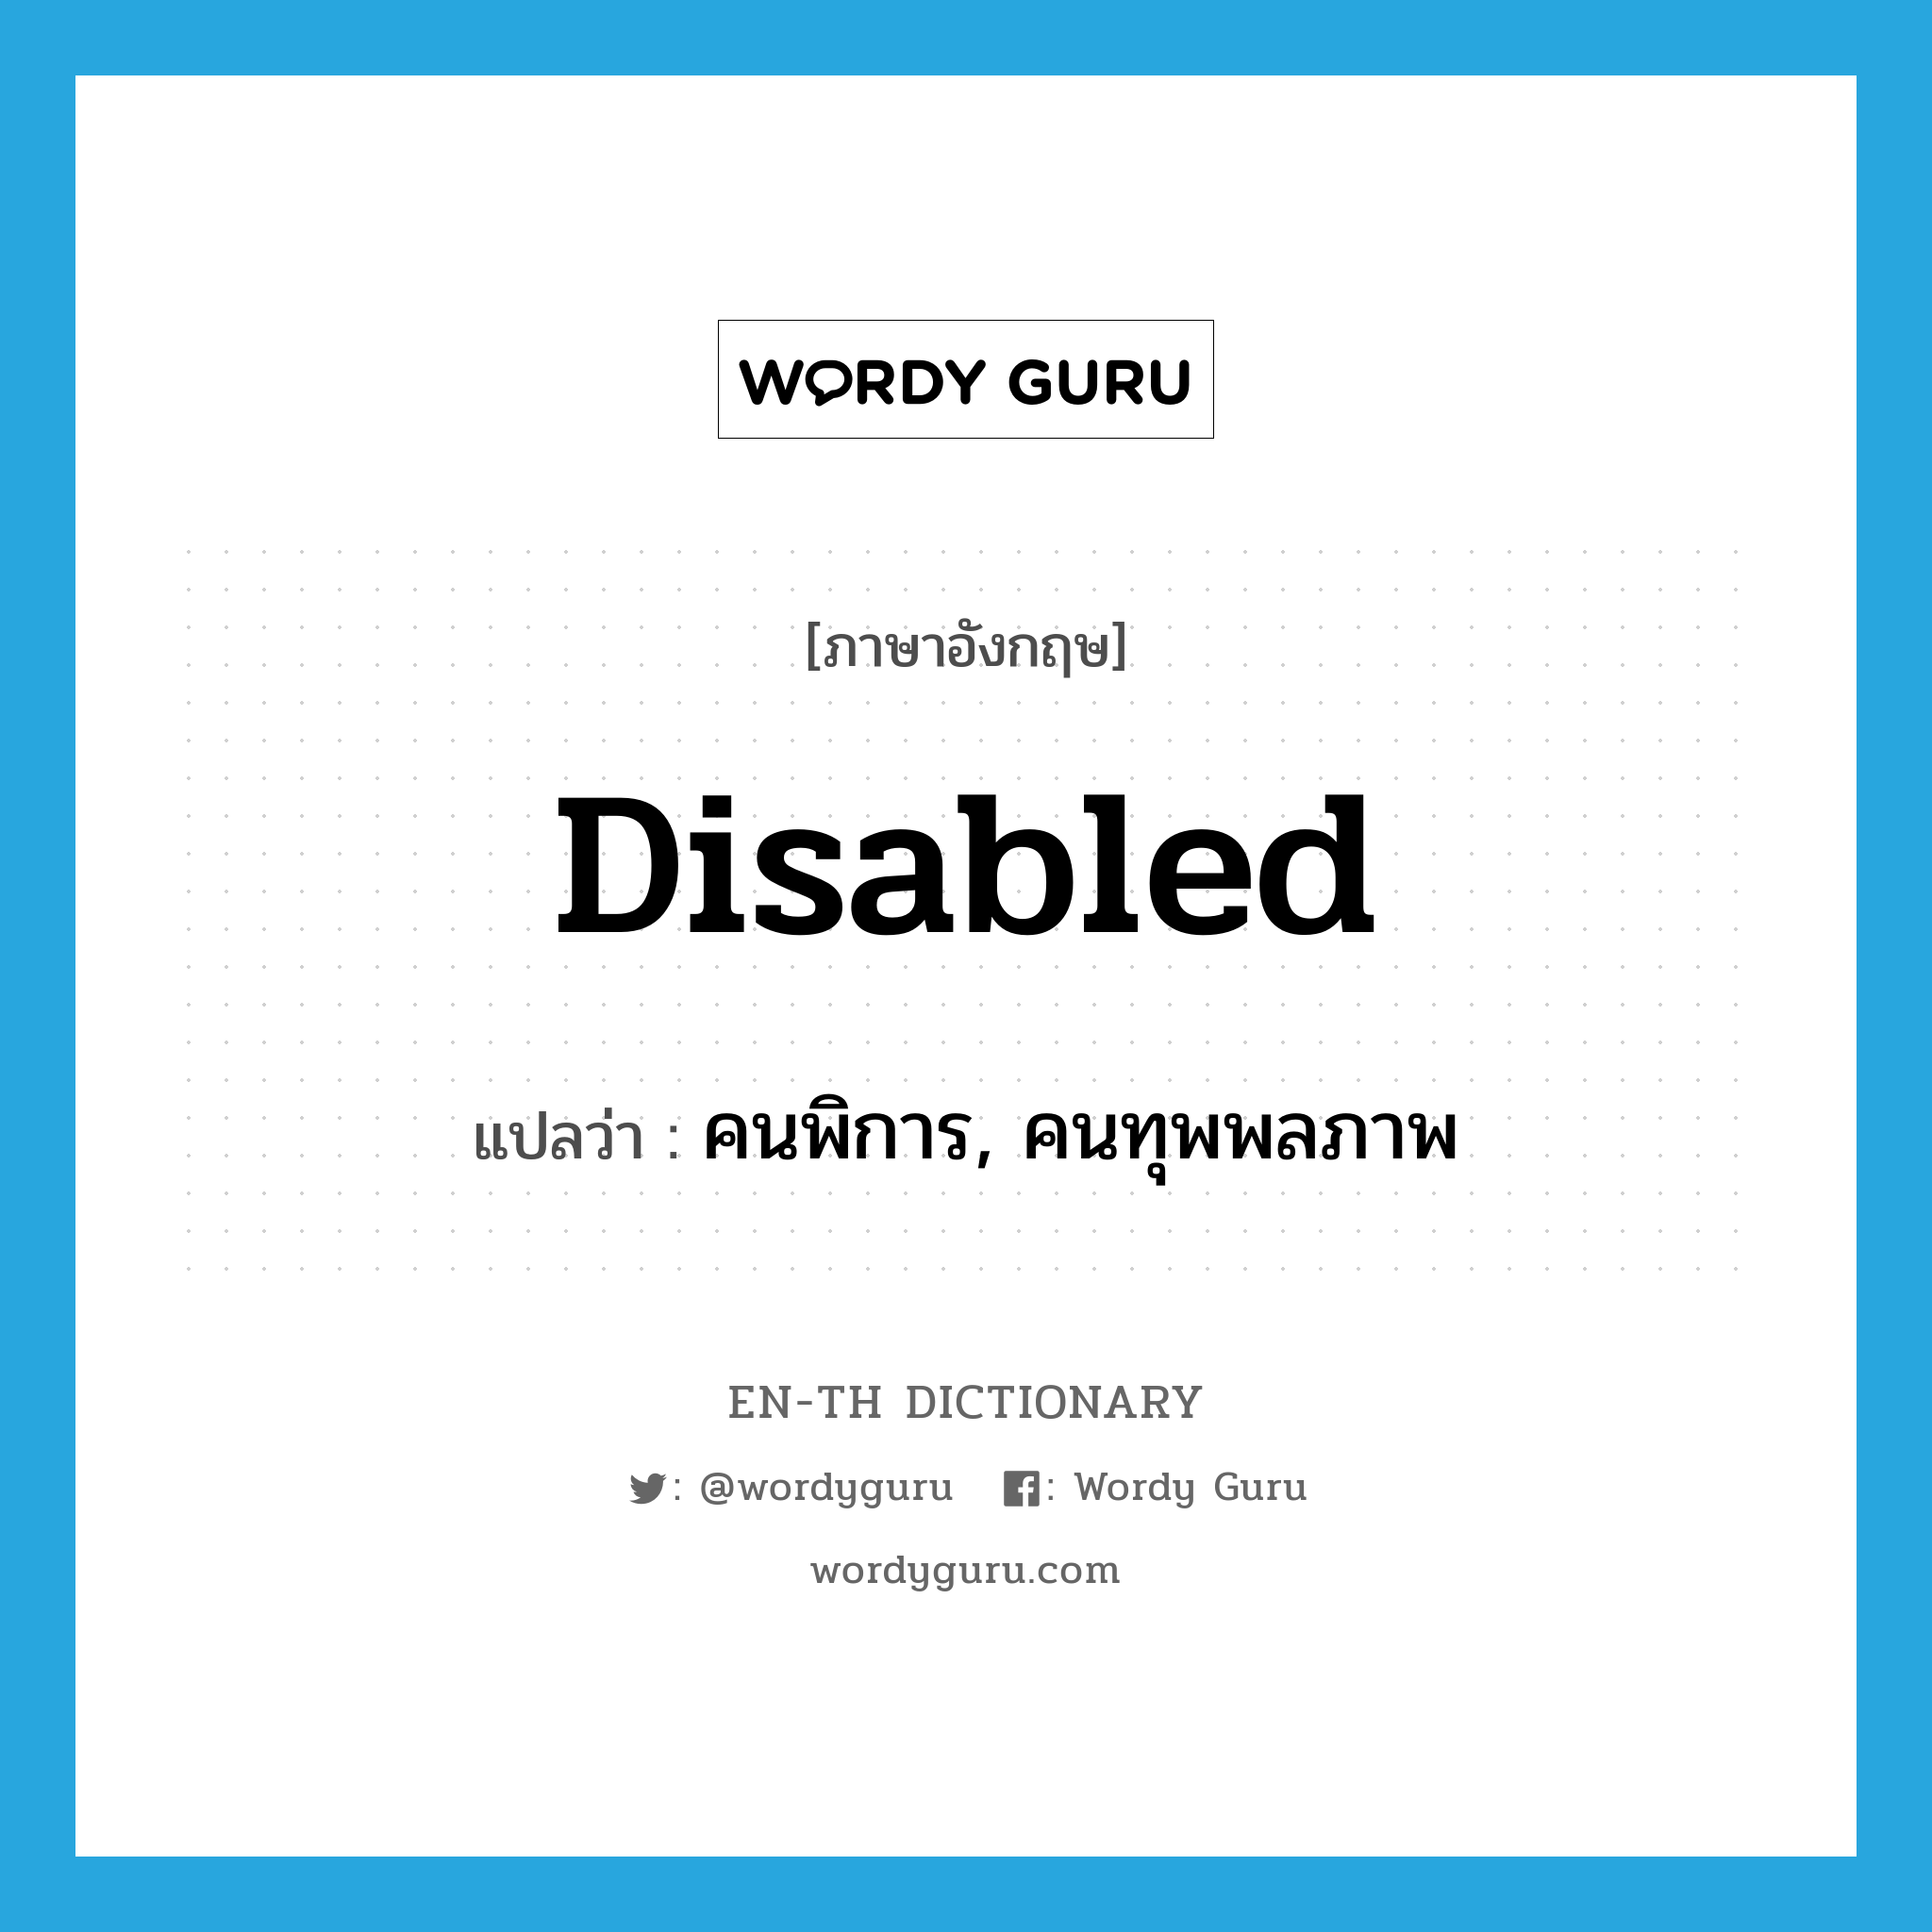 คนพิการ, คนทุพพลภาพ ภาษาอังกฤษ?, คำศัพท์ภาษาอังกฤษ คนพิการ, คนทุพพลภาพ แปลว่า disabled ประเภท N หมวด N